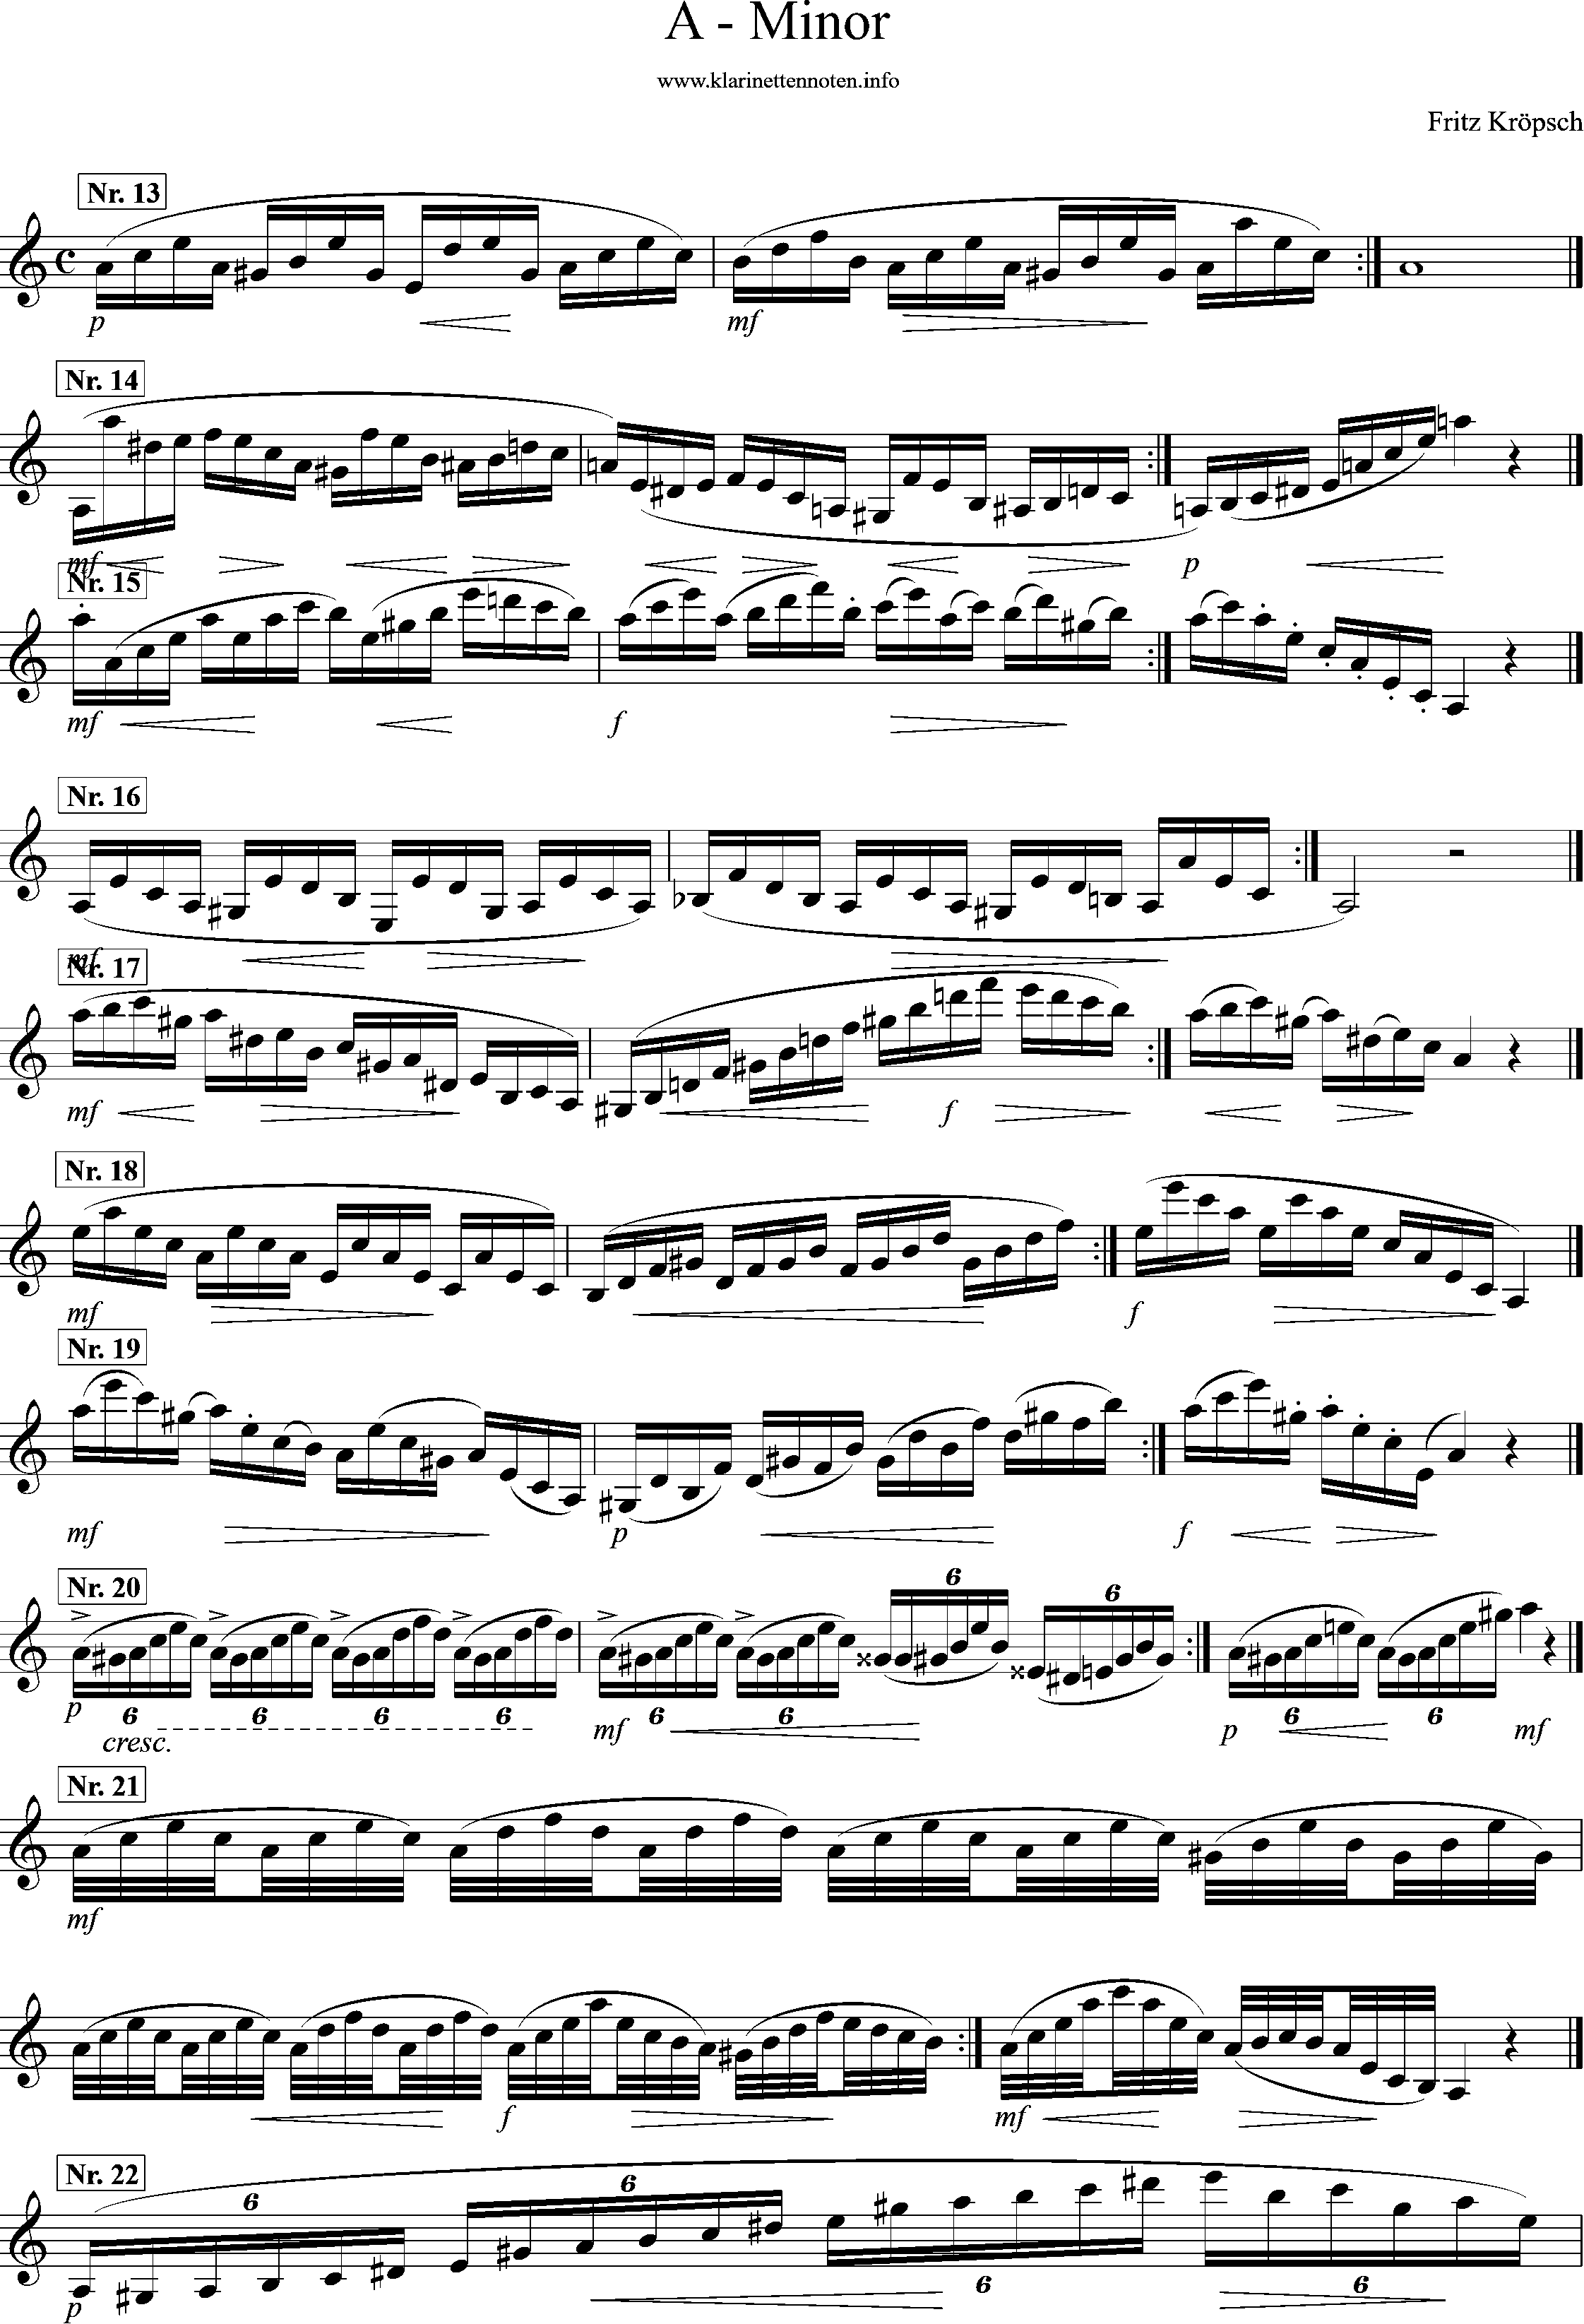 416 Etüden, Fritz Kröpsch, a-moll, seite 1